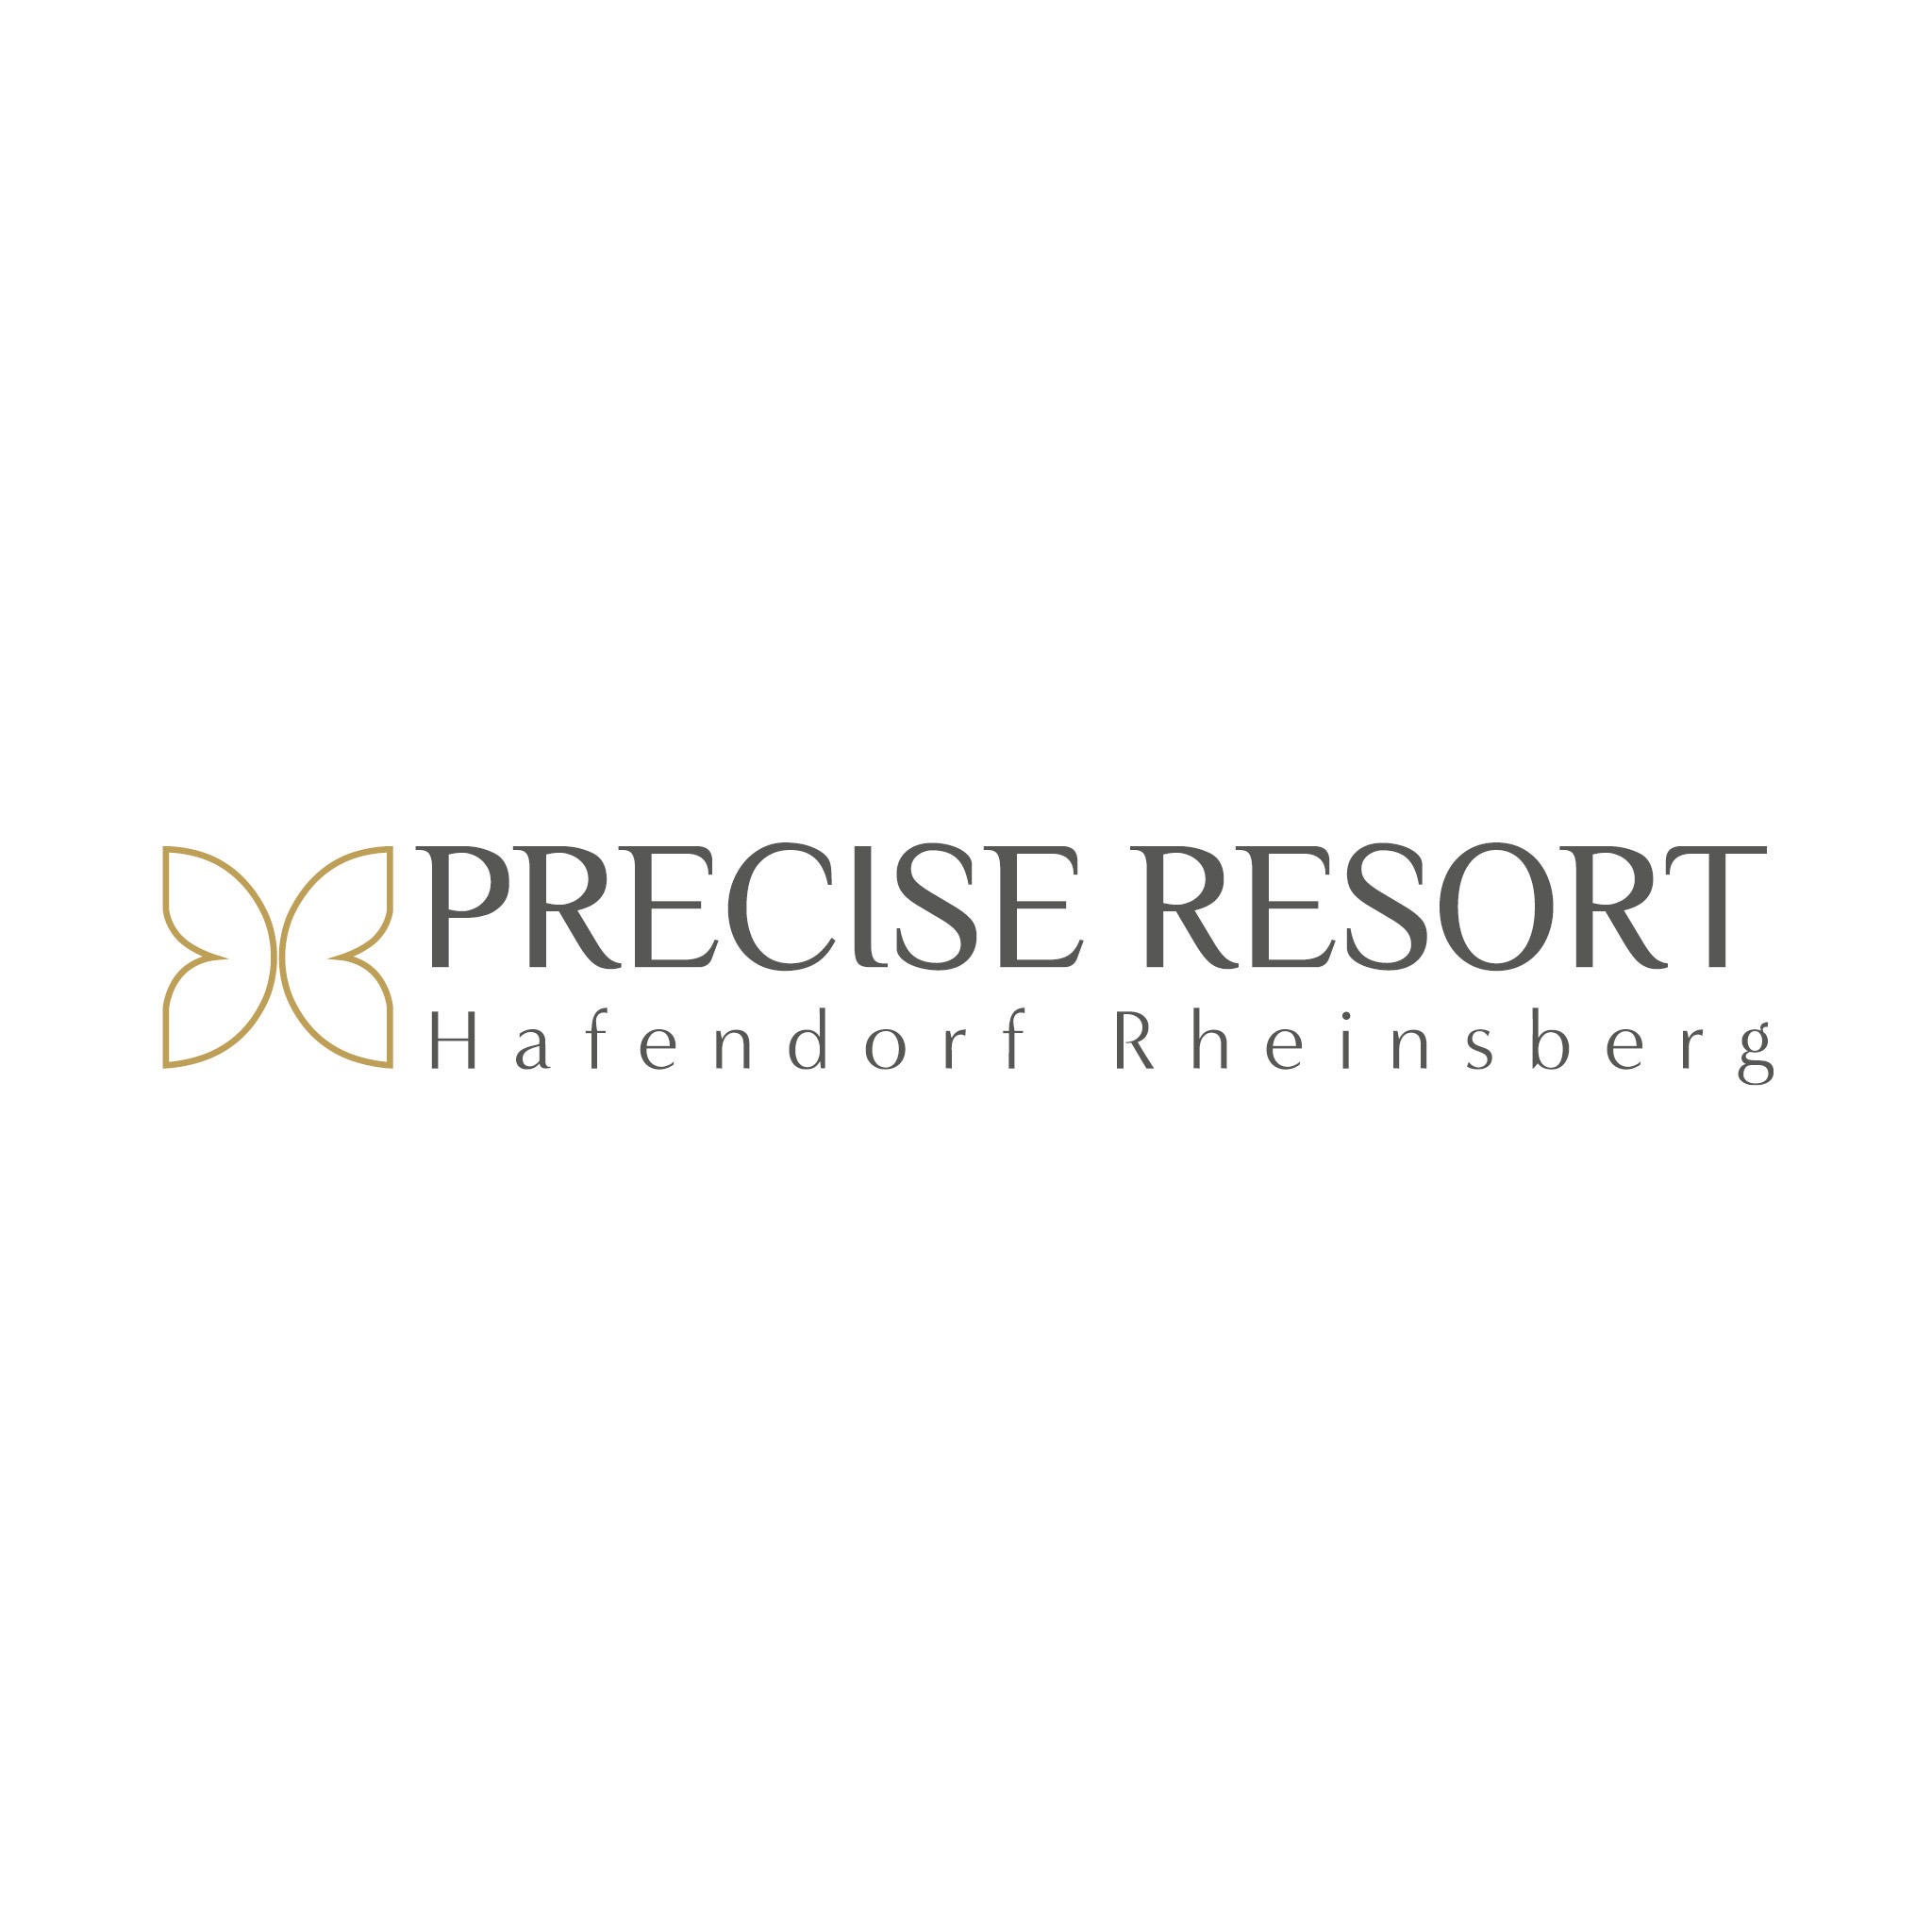 Precise Resort Hafendorf Rheinsberg in Rheinsberg in der Mark - Logo